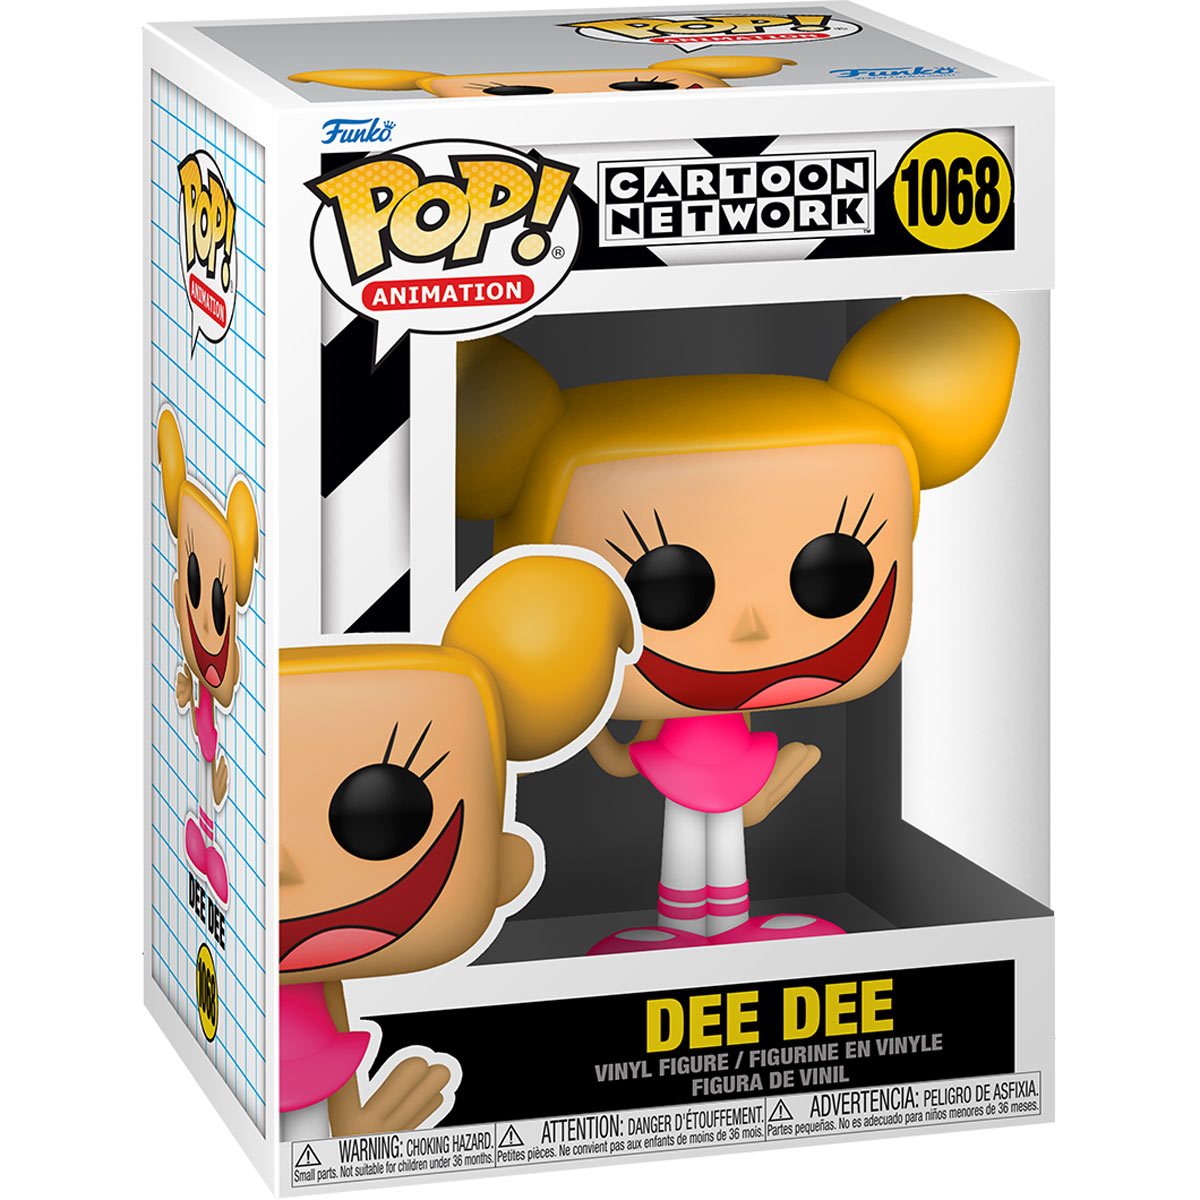 Dee Dee Dexters Labratory Funko Pop Figure